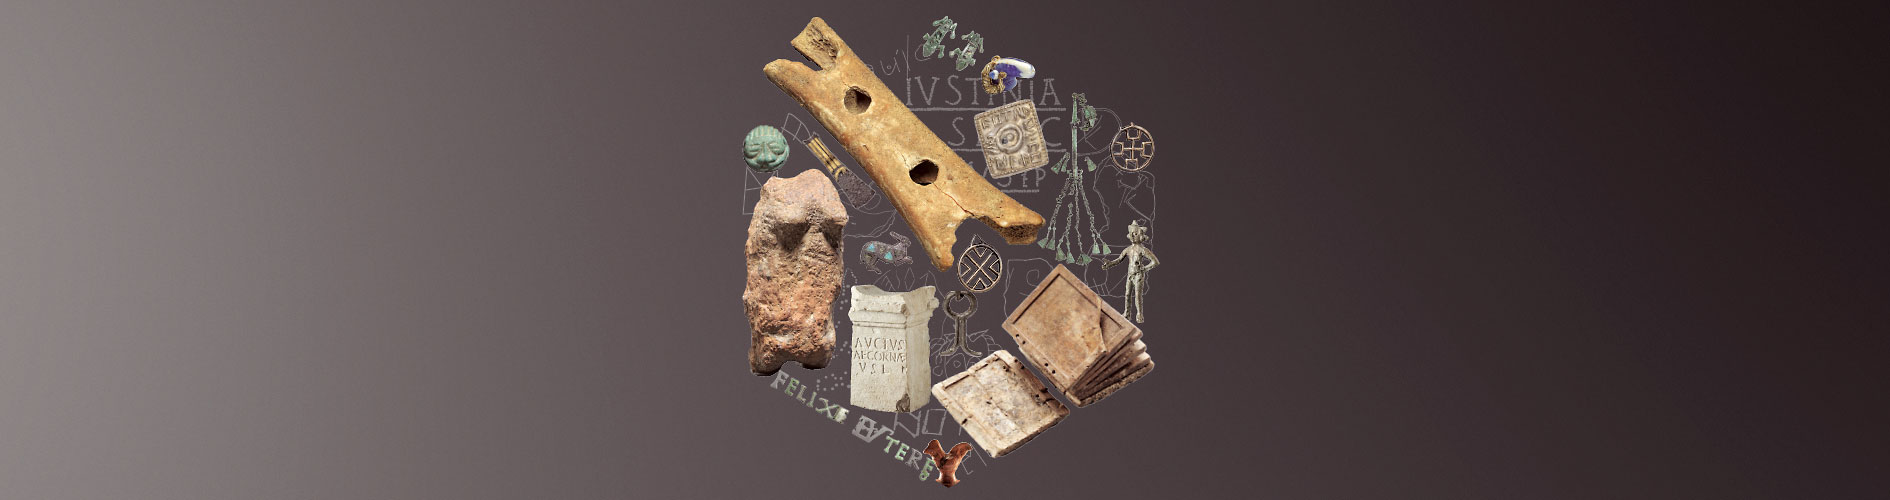 Verschiedene archäologische Objekte wie eine Knochenflöte, Steinfiguren, Schmuck und ein altertümliches Buch zu einem Kreis angeordnet